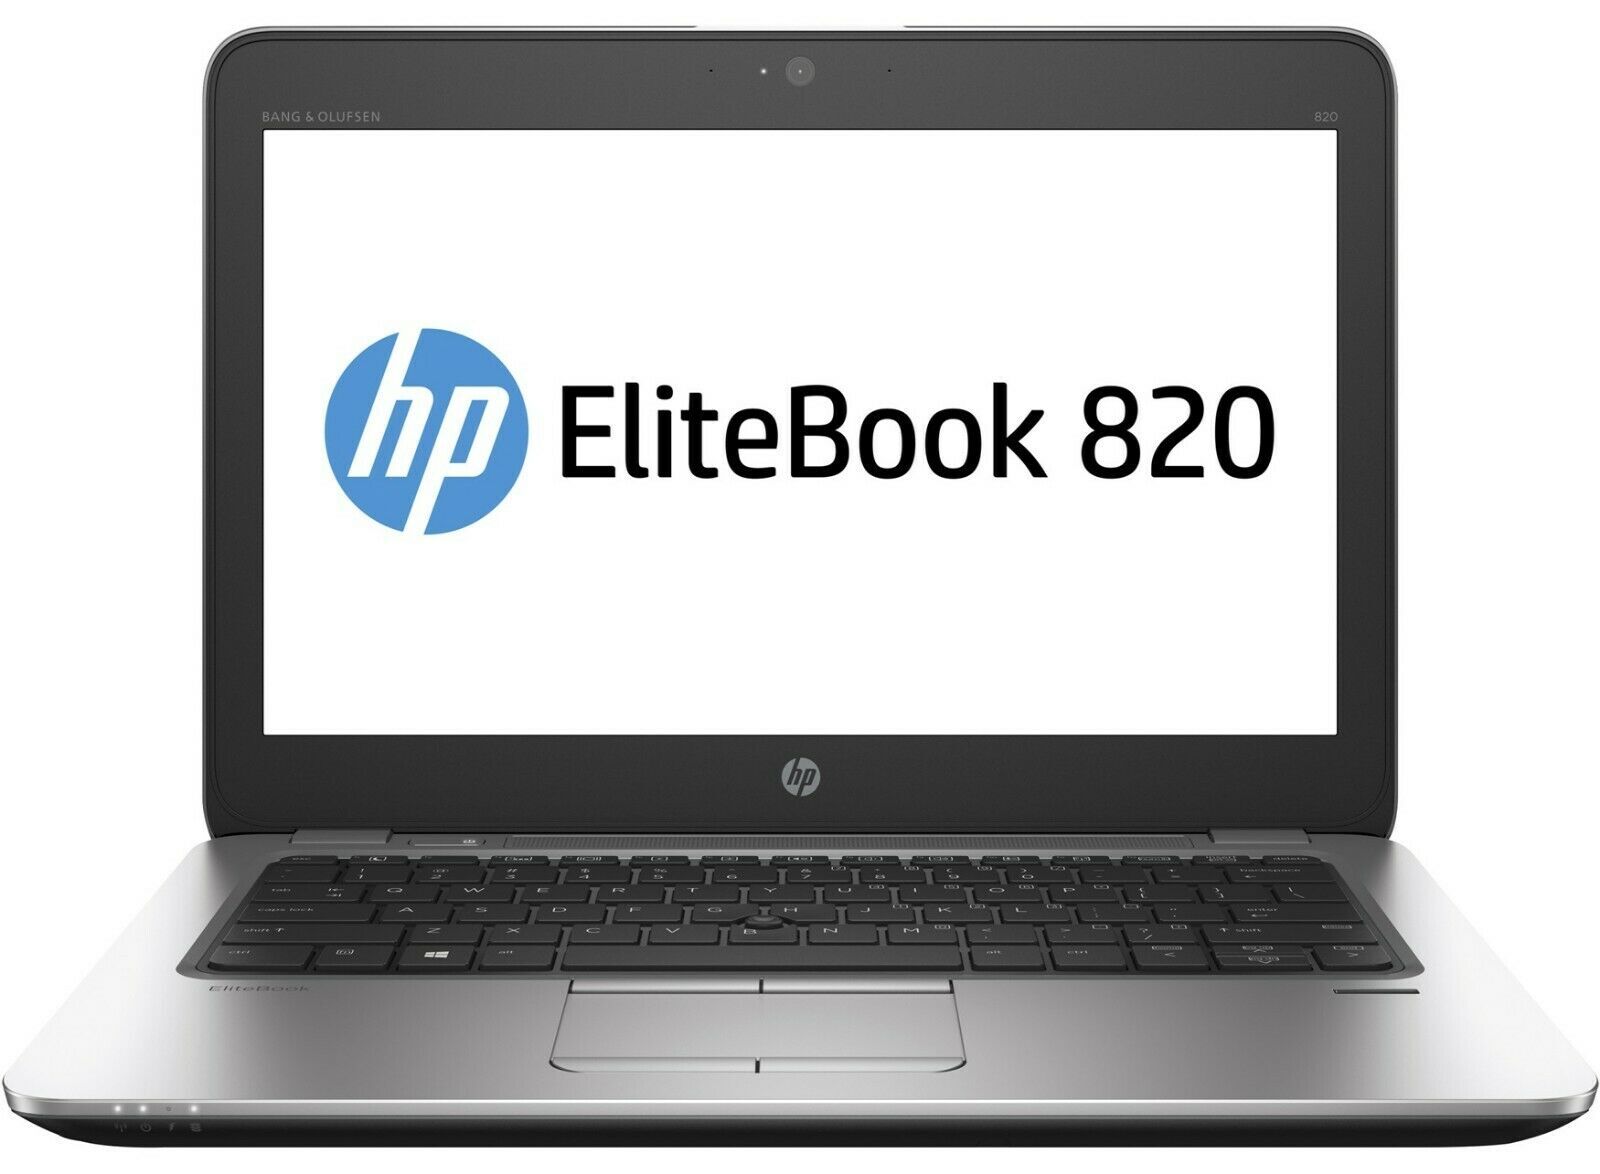 HP EliteBook 820 G3 Intel i7 6600U 2.60GHz 8GB RAM 500GB SSD 12.5" Win 10 - B Grade